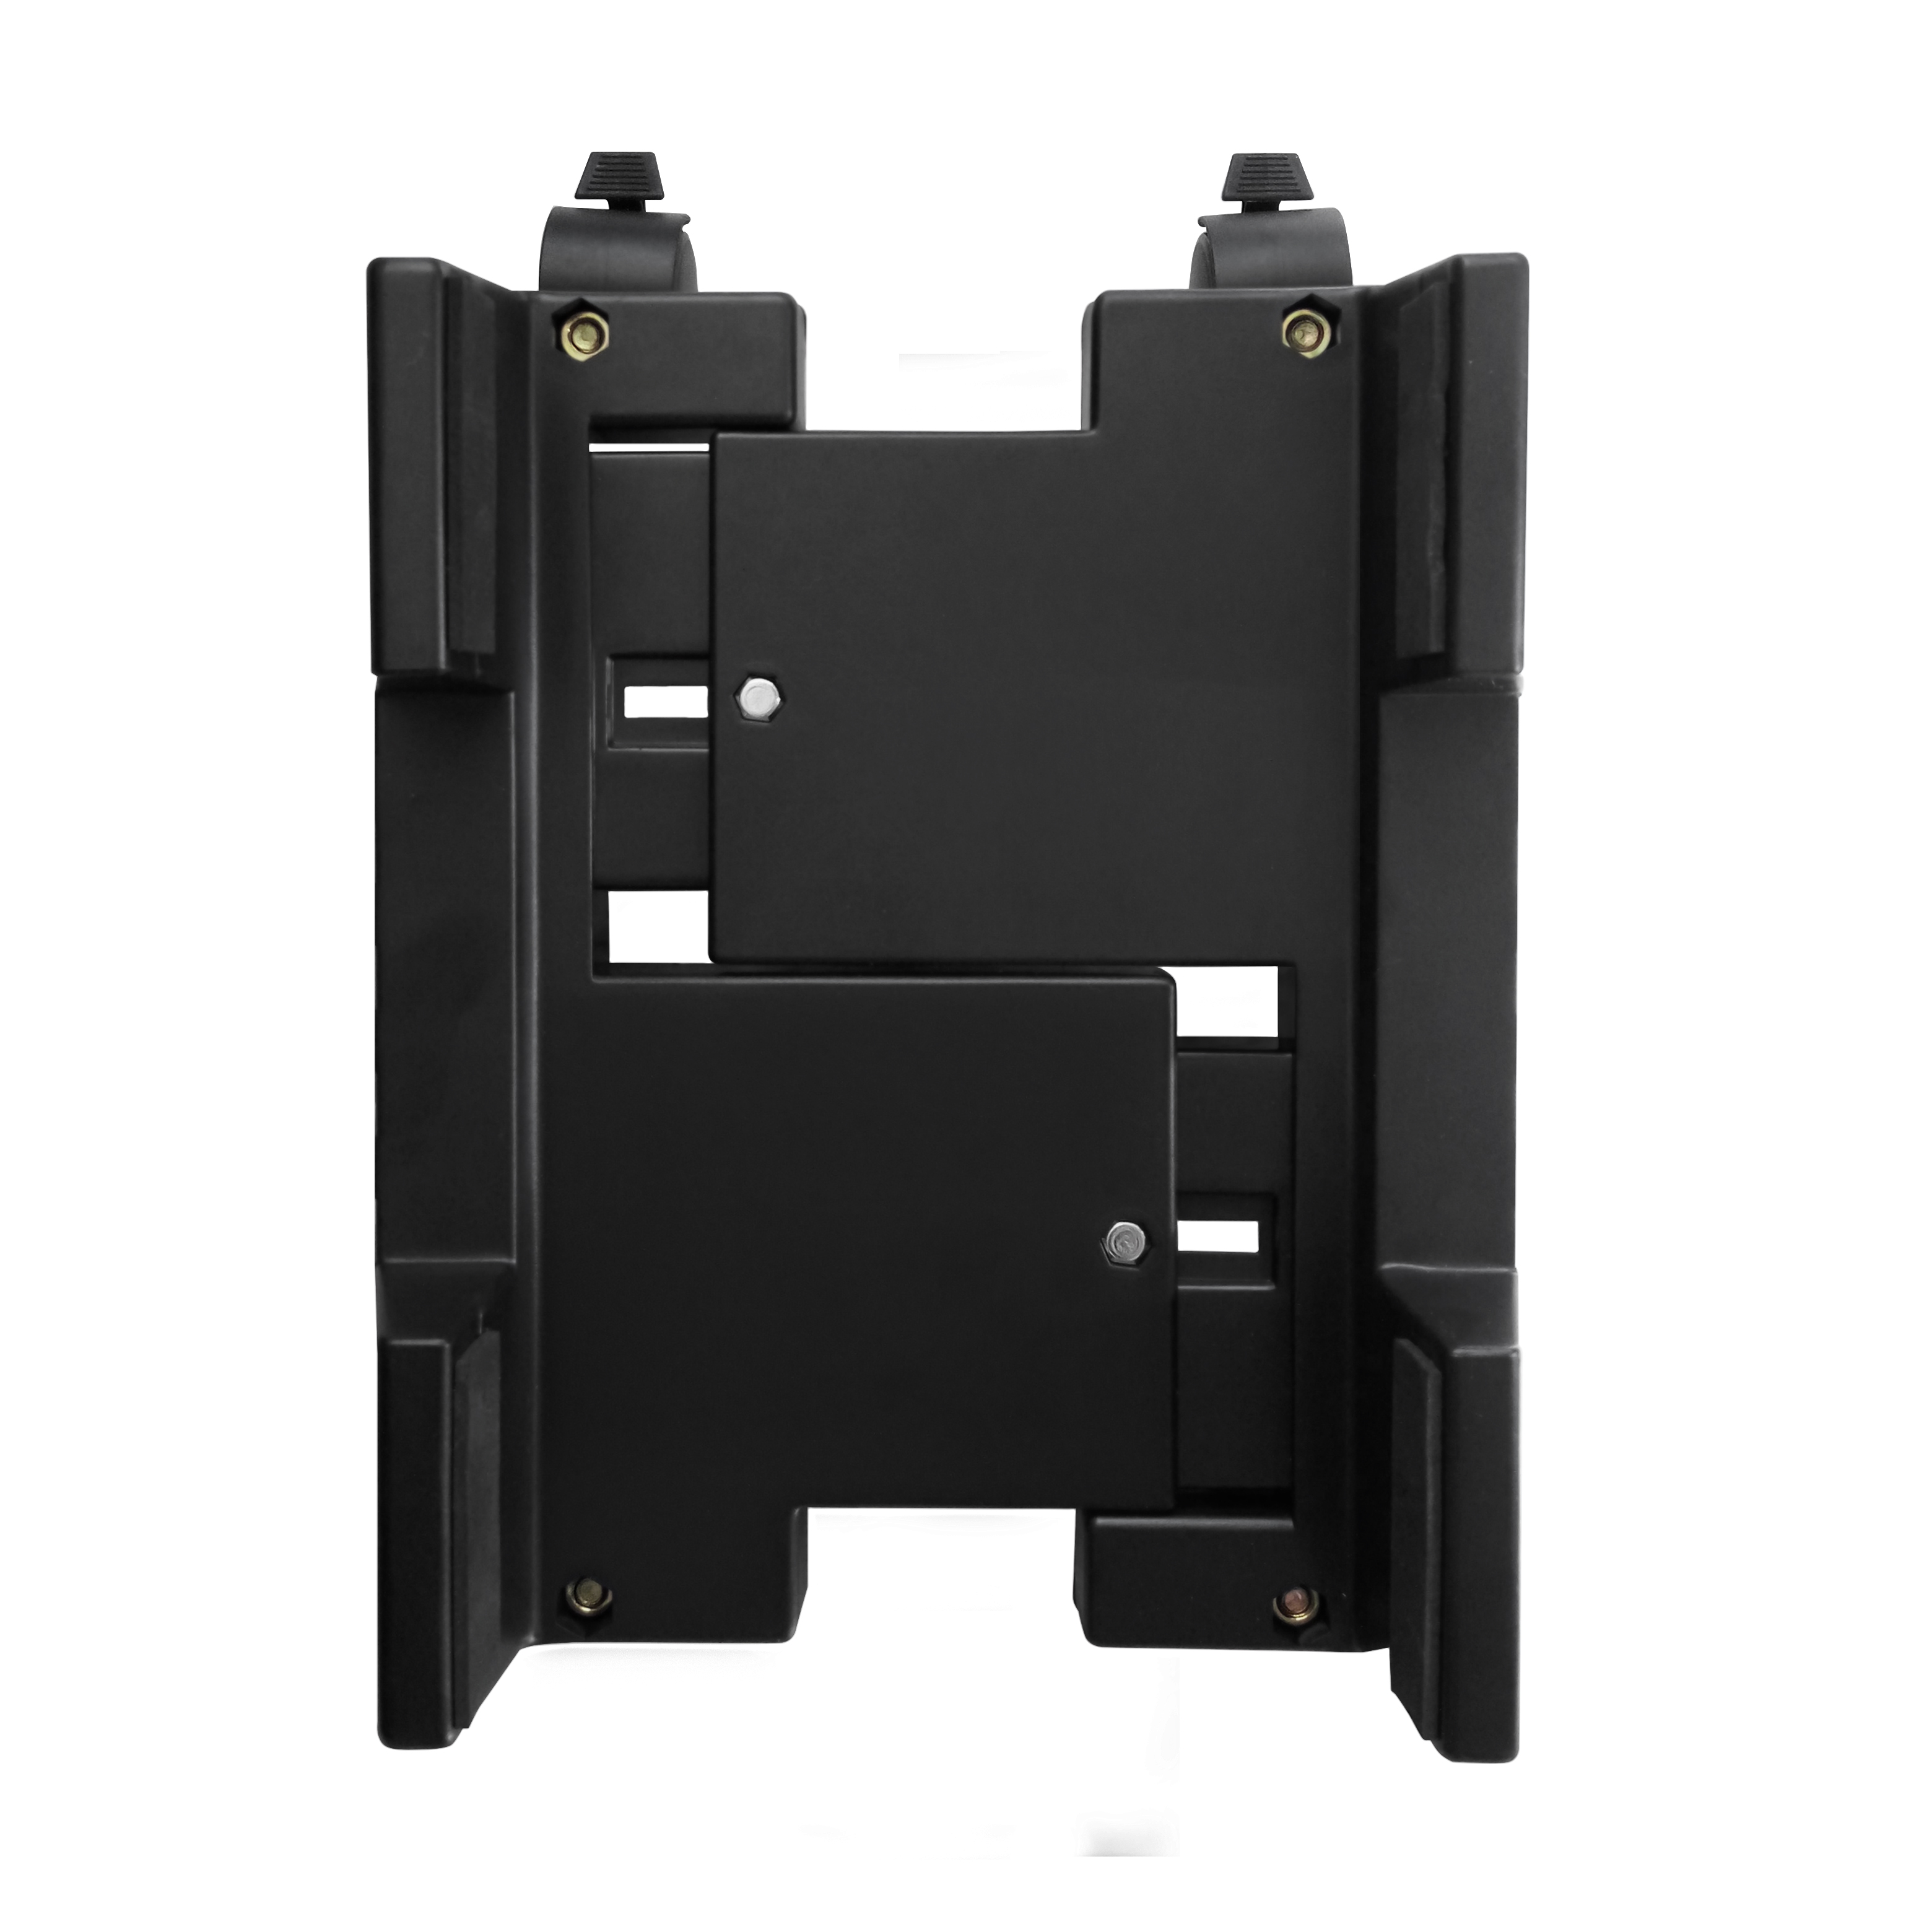 Poggiapiedi & Ewent EW1290 Portacase Supporto per PC case con rotelle Bloccabili Basics larghezza regolabile nero 